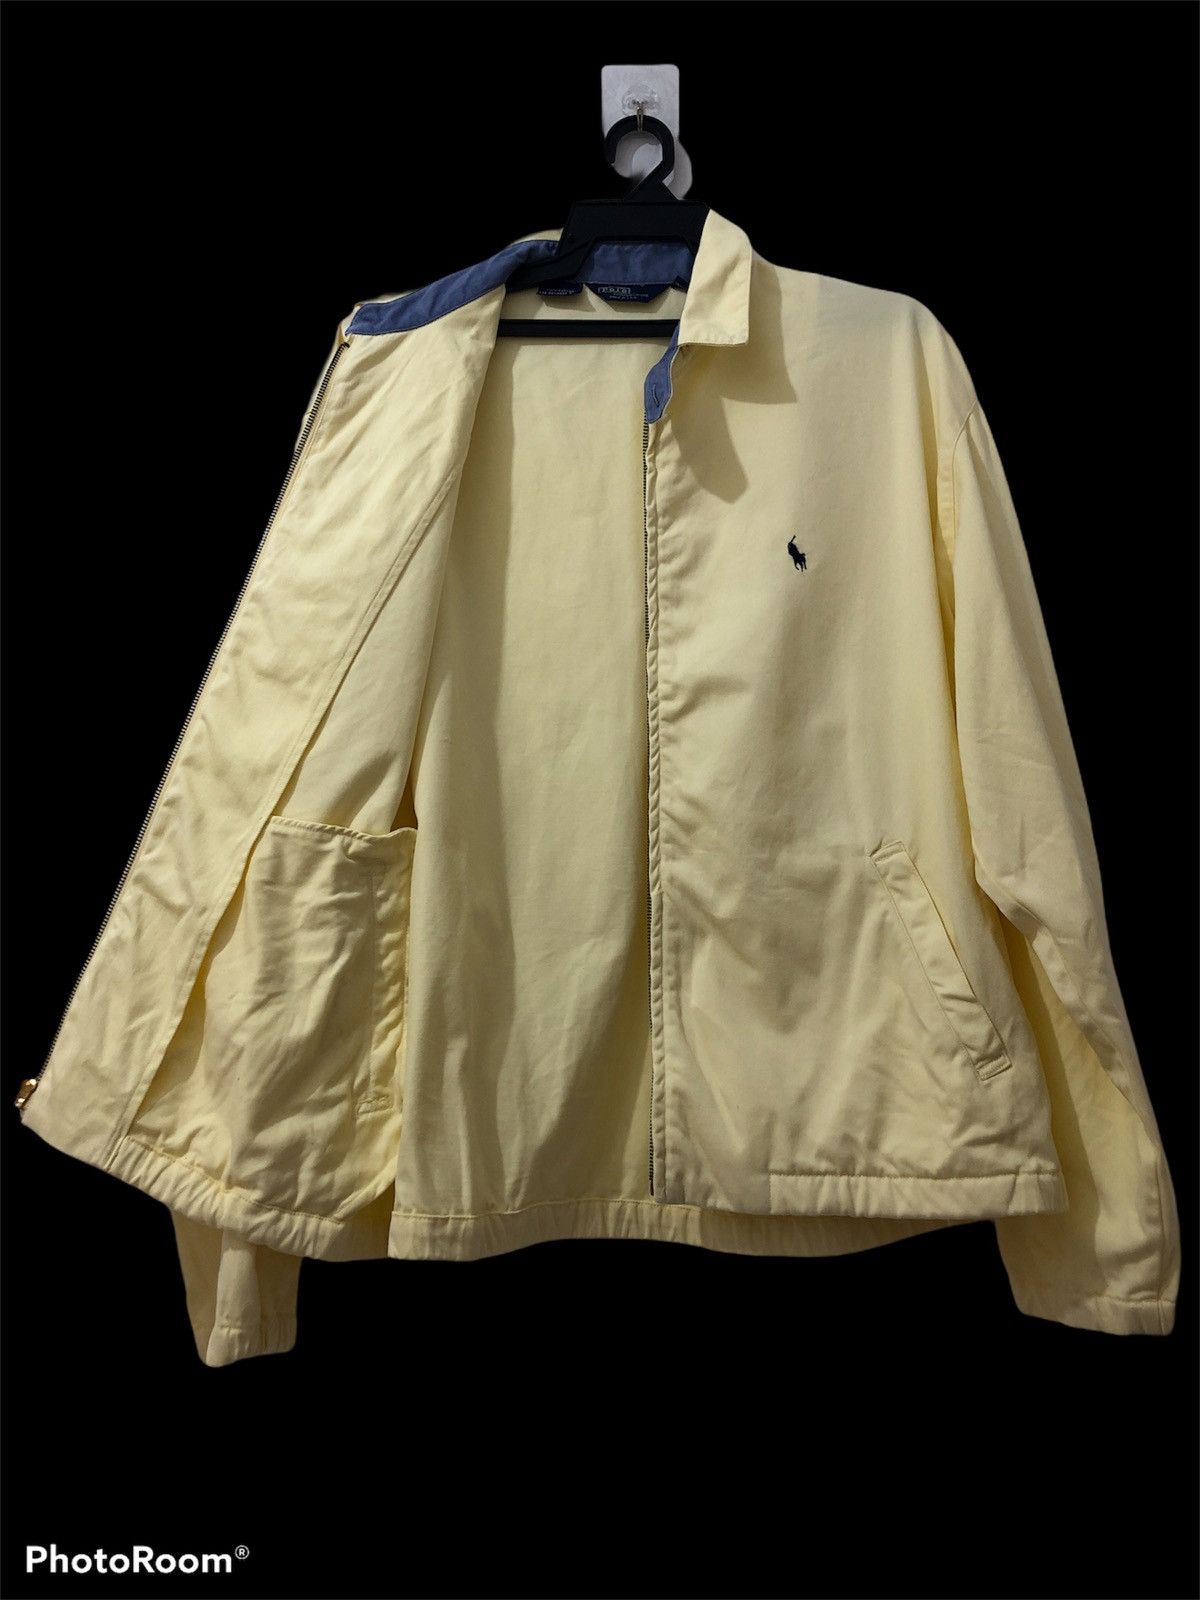 Polo Ralph Lauren - Polo jacket zipper up - 3